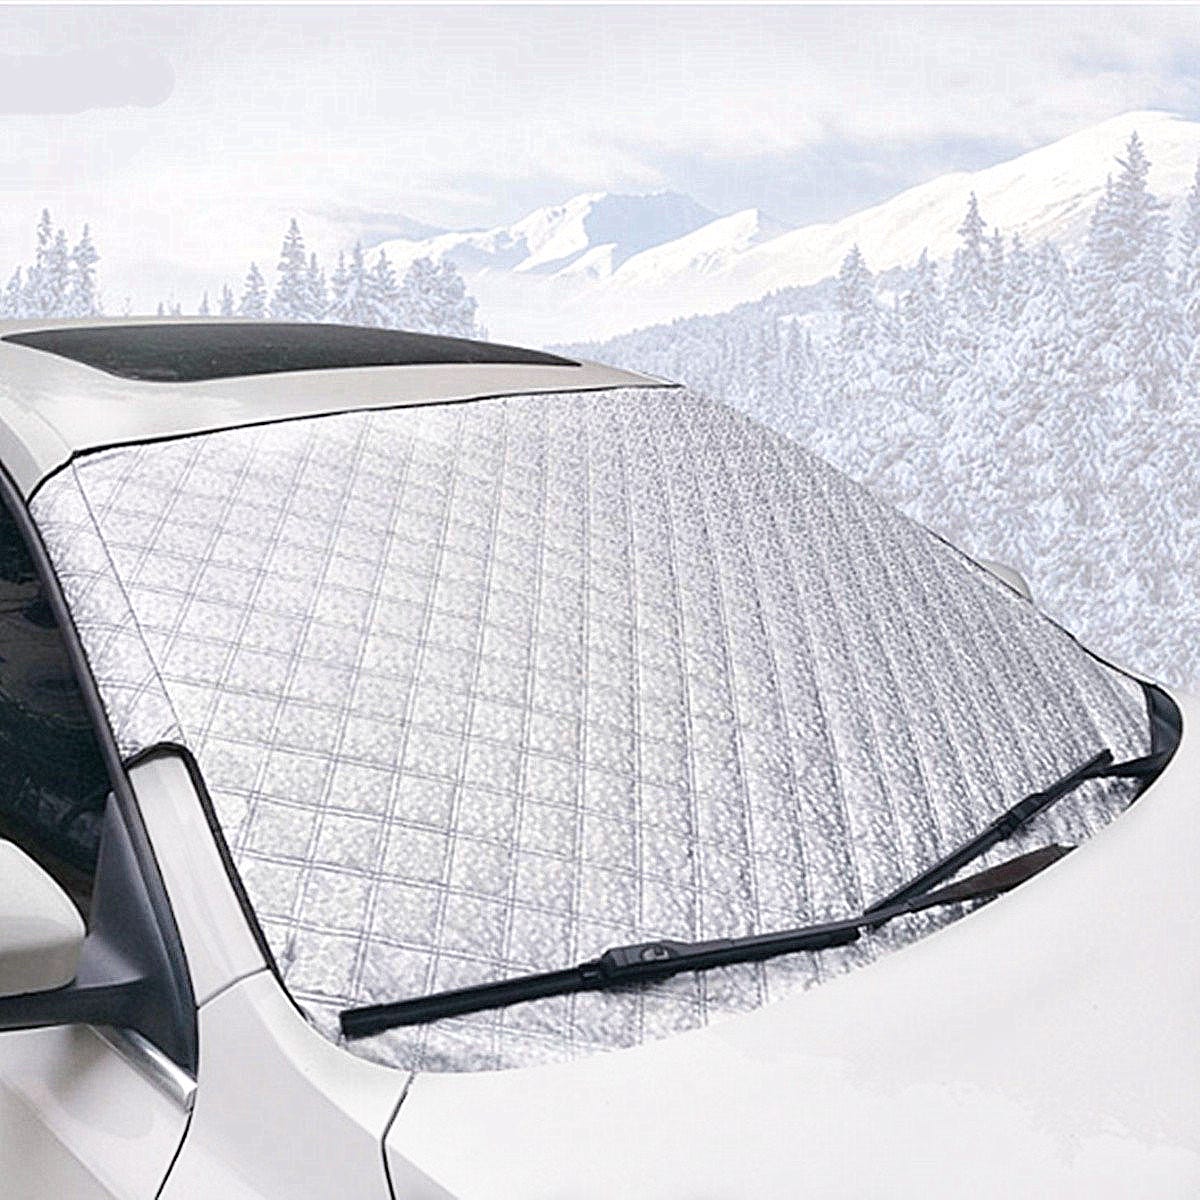 Protection Couverture de pare-brise pare-soleil pour voiture UV